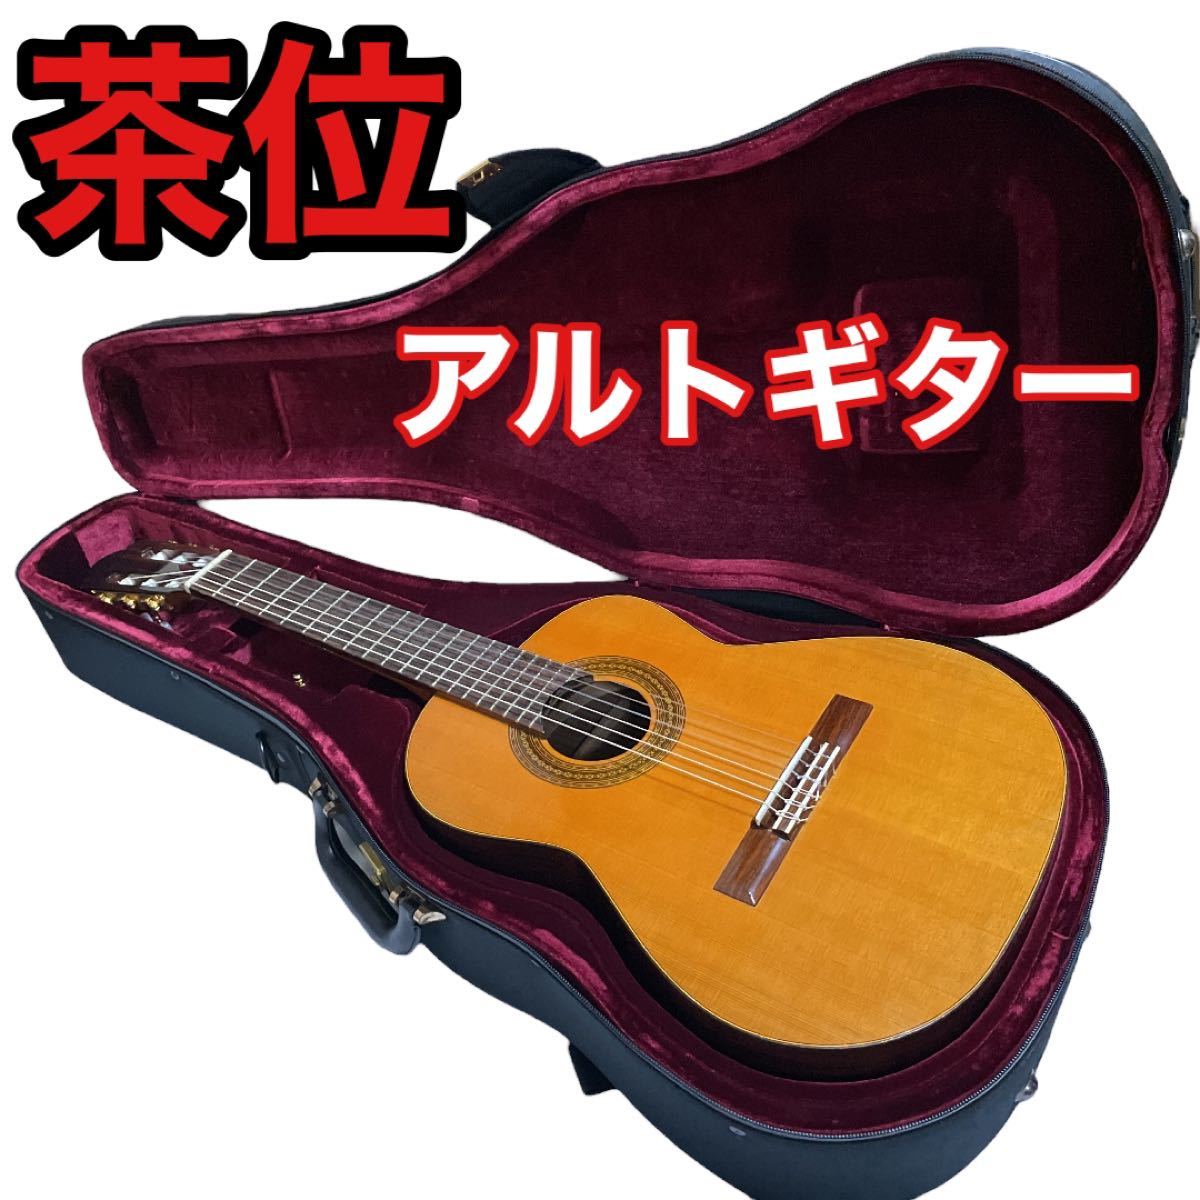 茶位 N606A/茶位幸信/no.6/アルトギター/レキントギター/chai 純正入荷